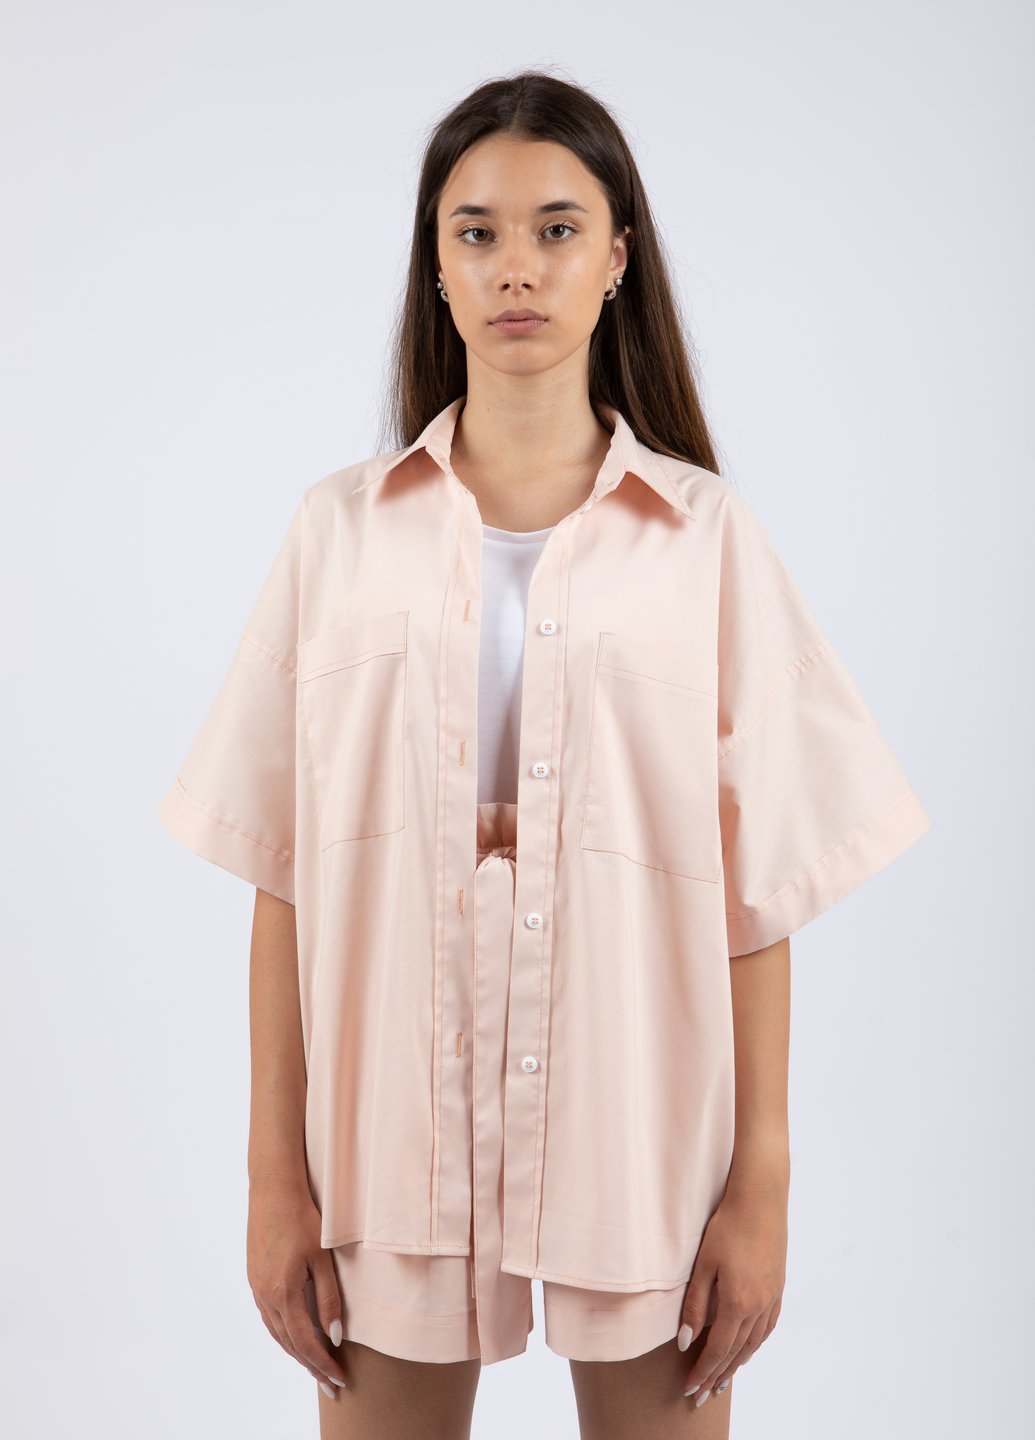 Купить Хлопковая оверсайз рубашка женская Merlini Борнео 200000017 - Персиковый, 42-44 в интернет-магазине